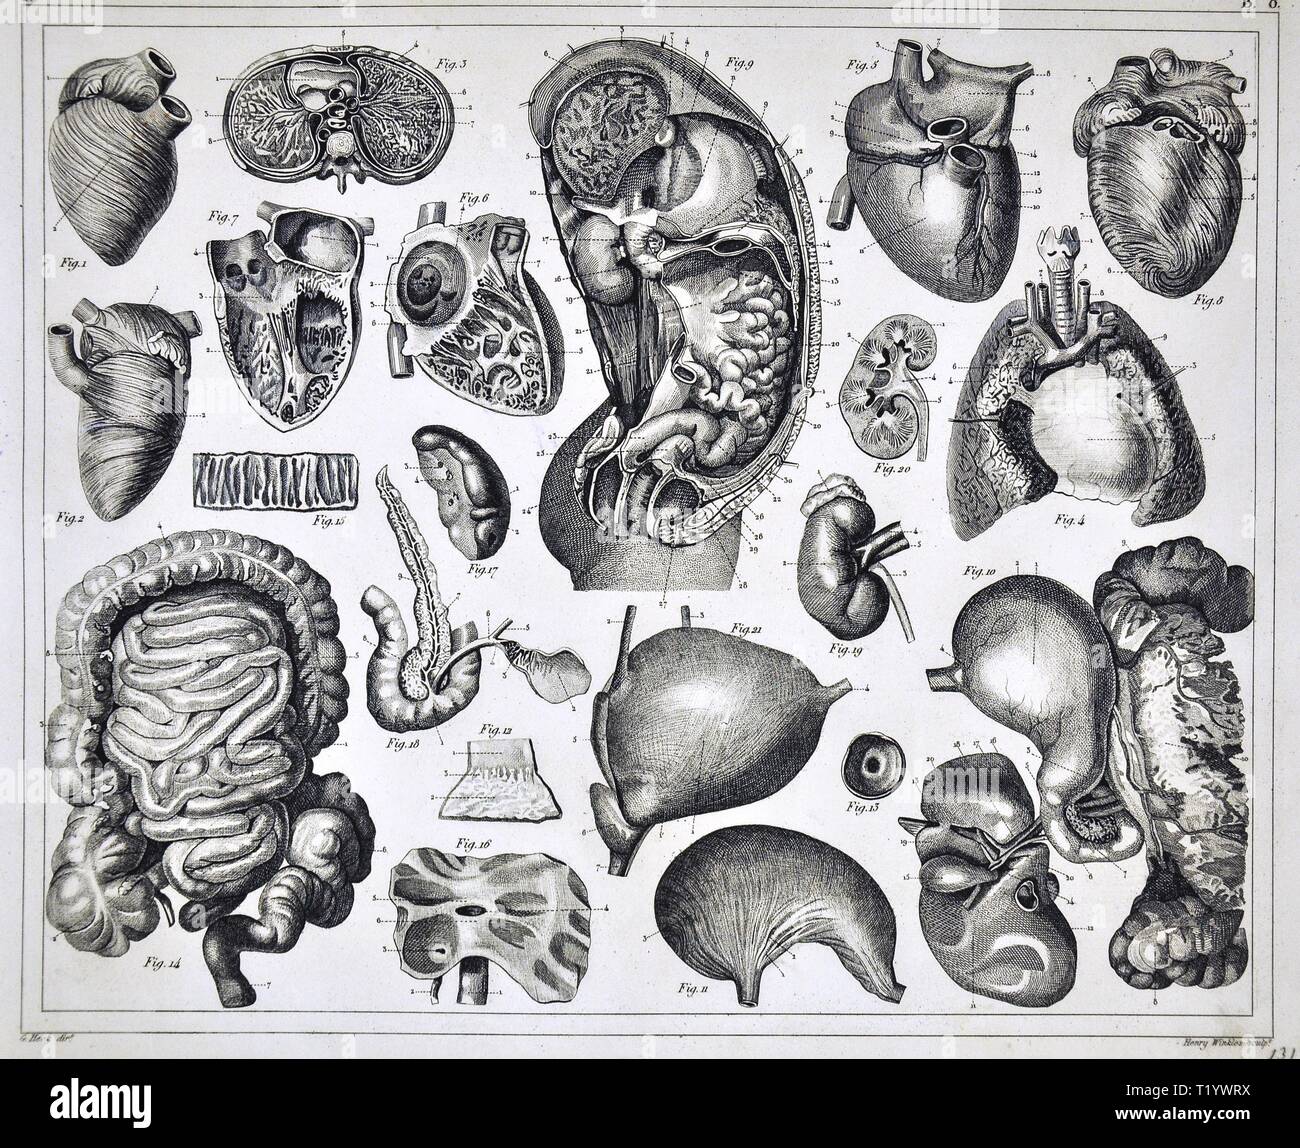 1849 Illustration médicale de l'anatomie humaine montrant le Cœur, intestin, poumon, estomac, foie, reins de l'abdomen et le thorax Banque D'Images